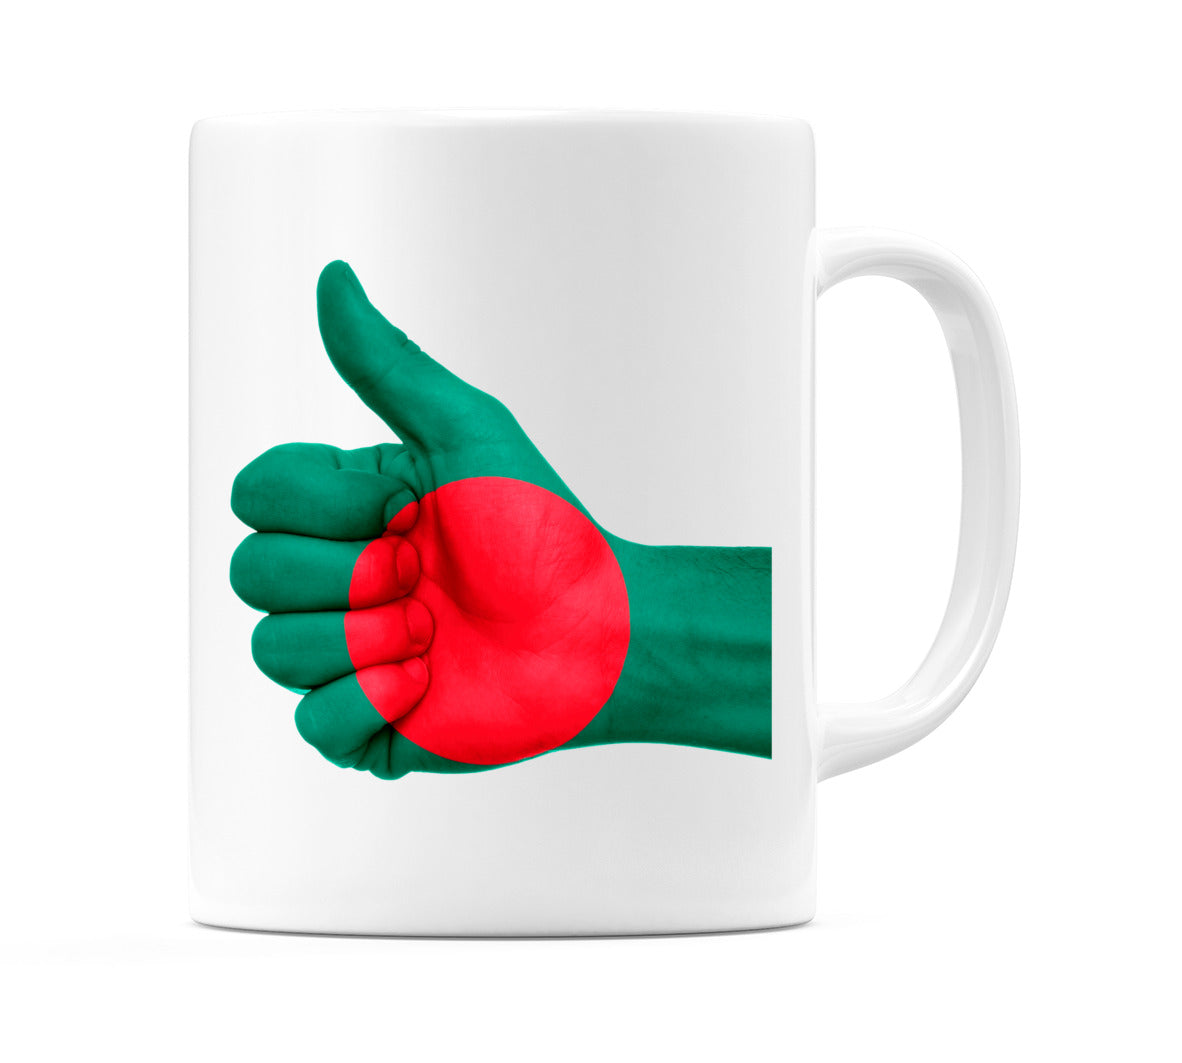 Bangladesh Thumbs up Flag Mug